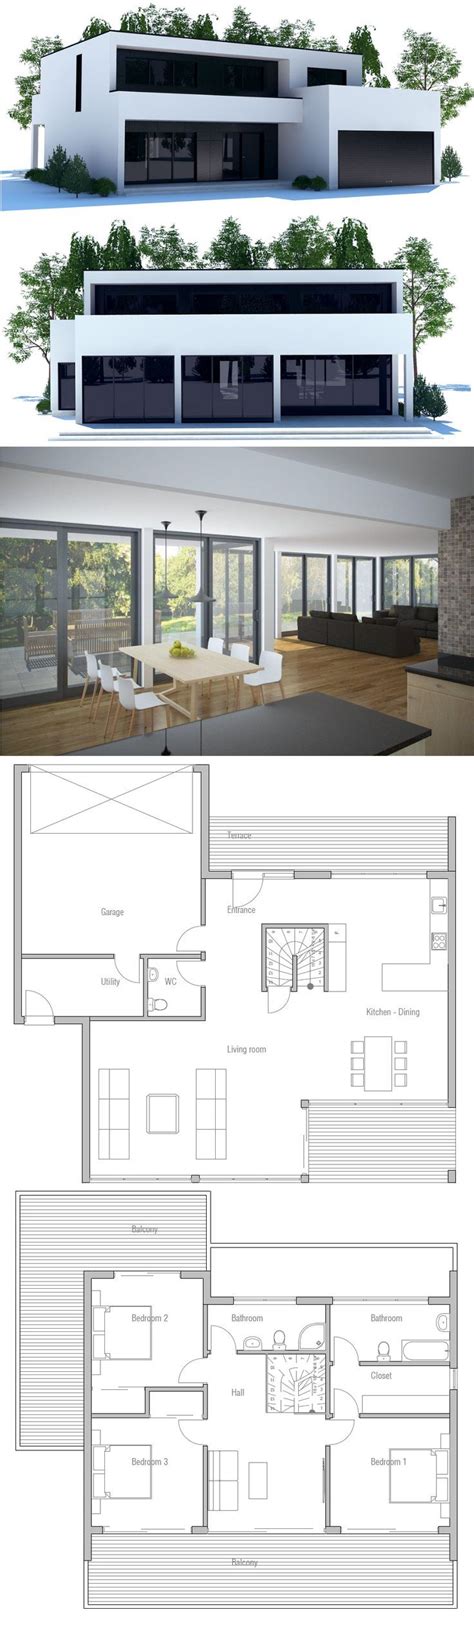 Minimalist House Floor Plans House Plans Modern Minimalist Plan